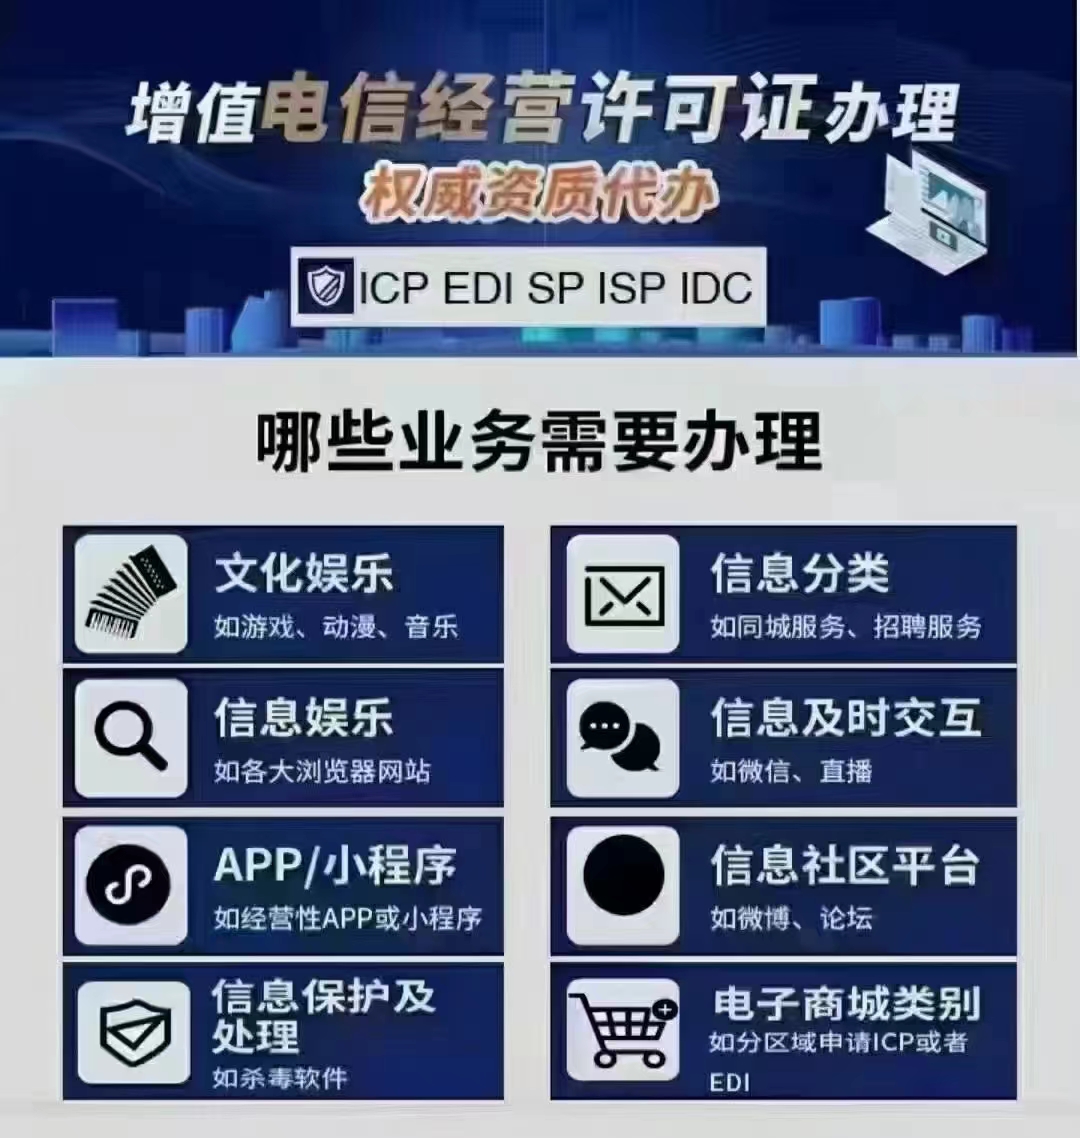 经营性业务北京市小程序上线需要ICP许可证吗；